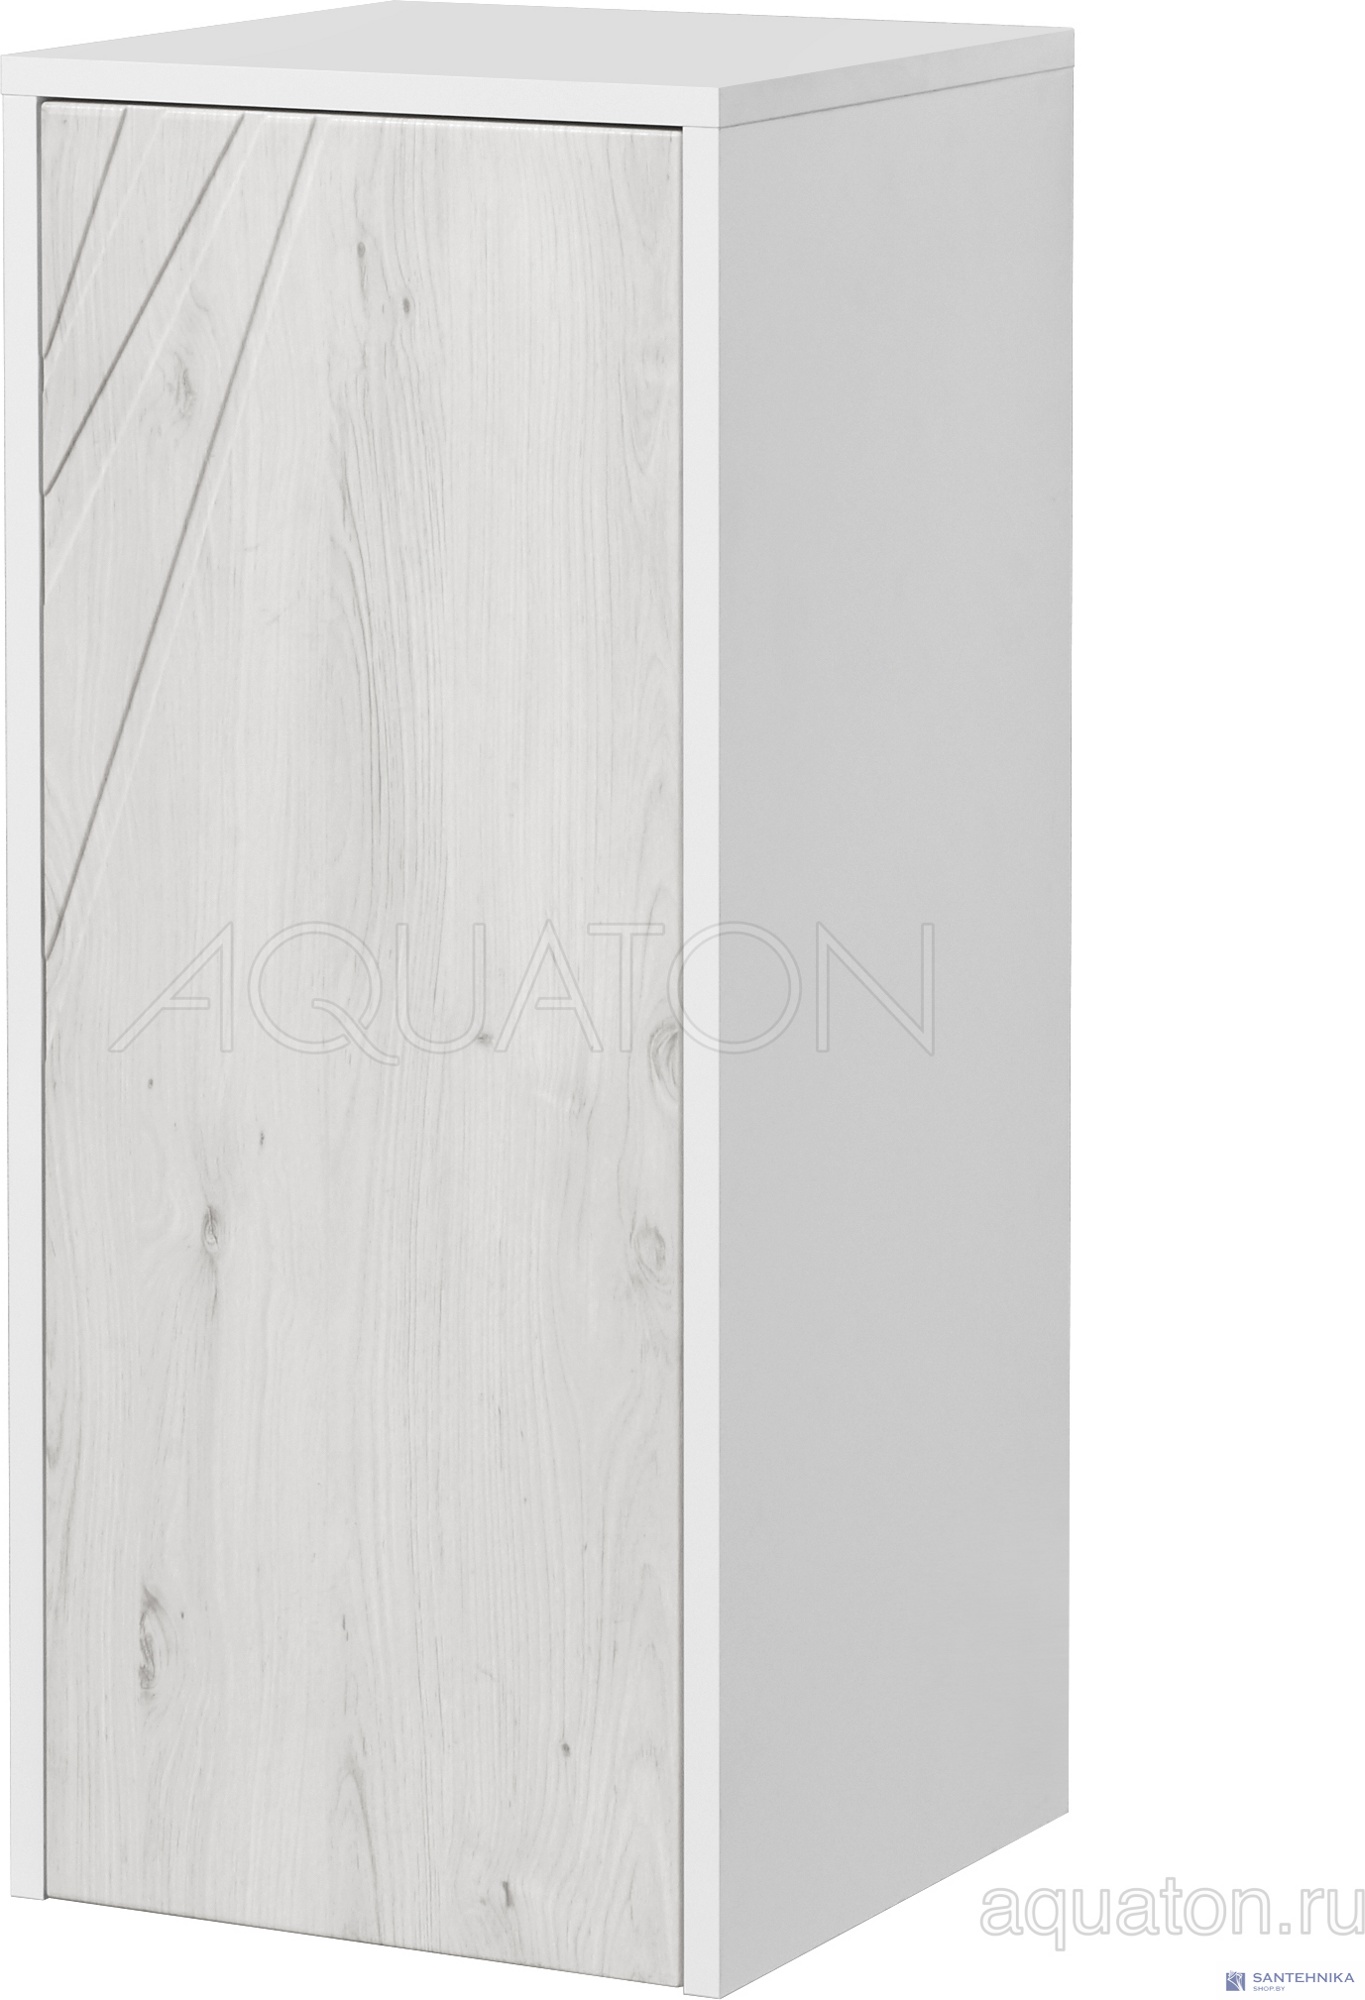 Шкафчик Aquaton Сакура с корзиной ольха наварра, белый глянец 1A220703SKW80